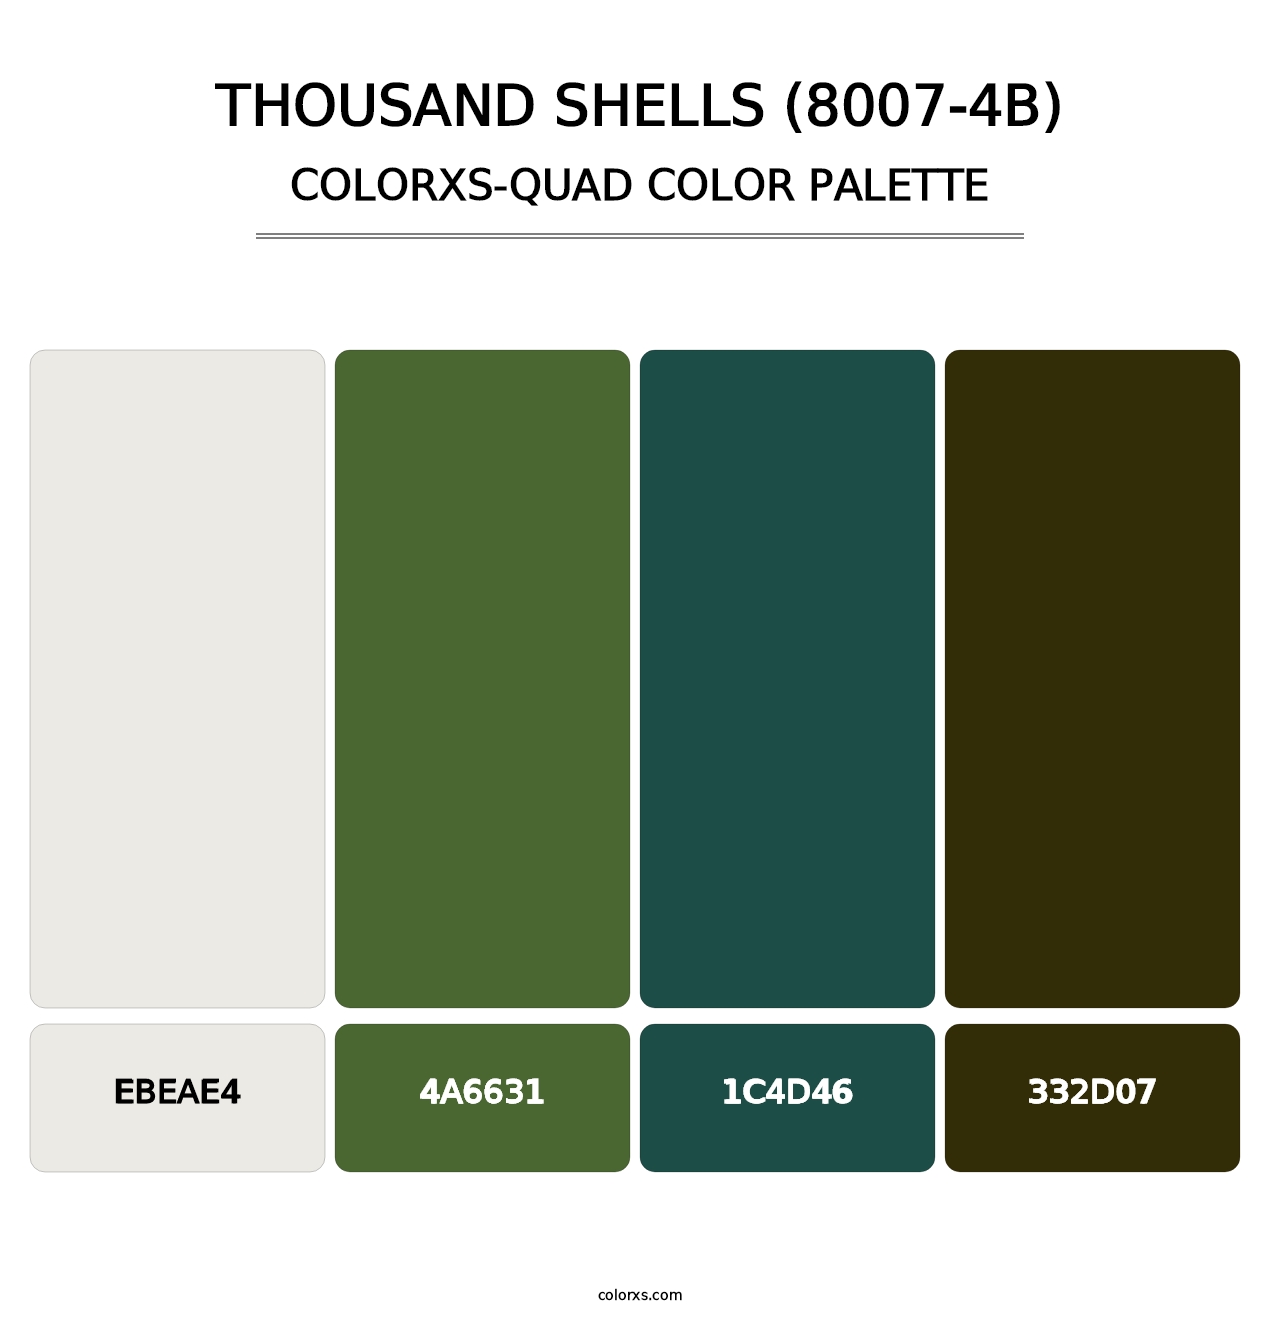 Thousand Shells (8007-4B) - Colorxs Quad Palette